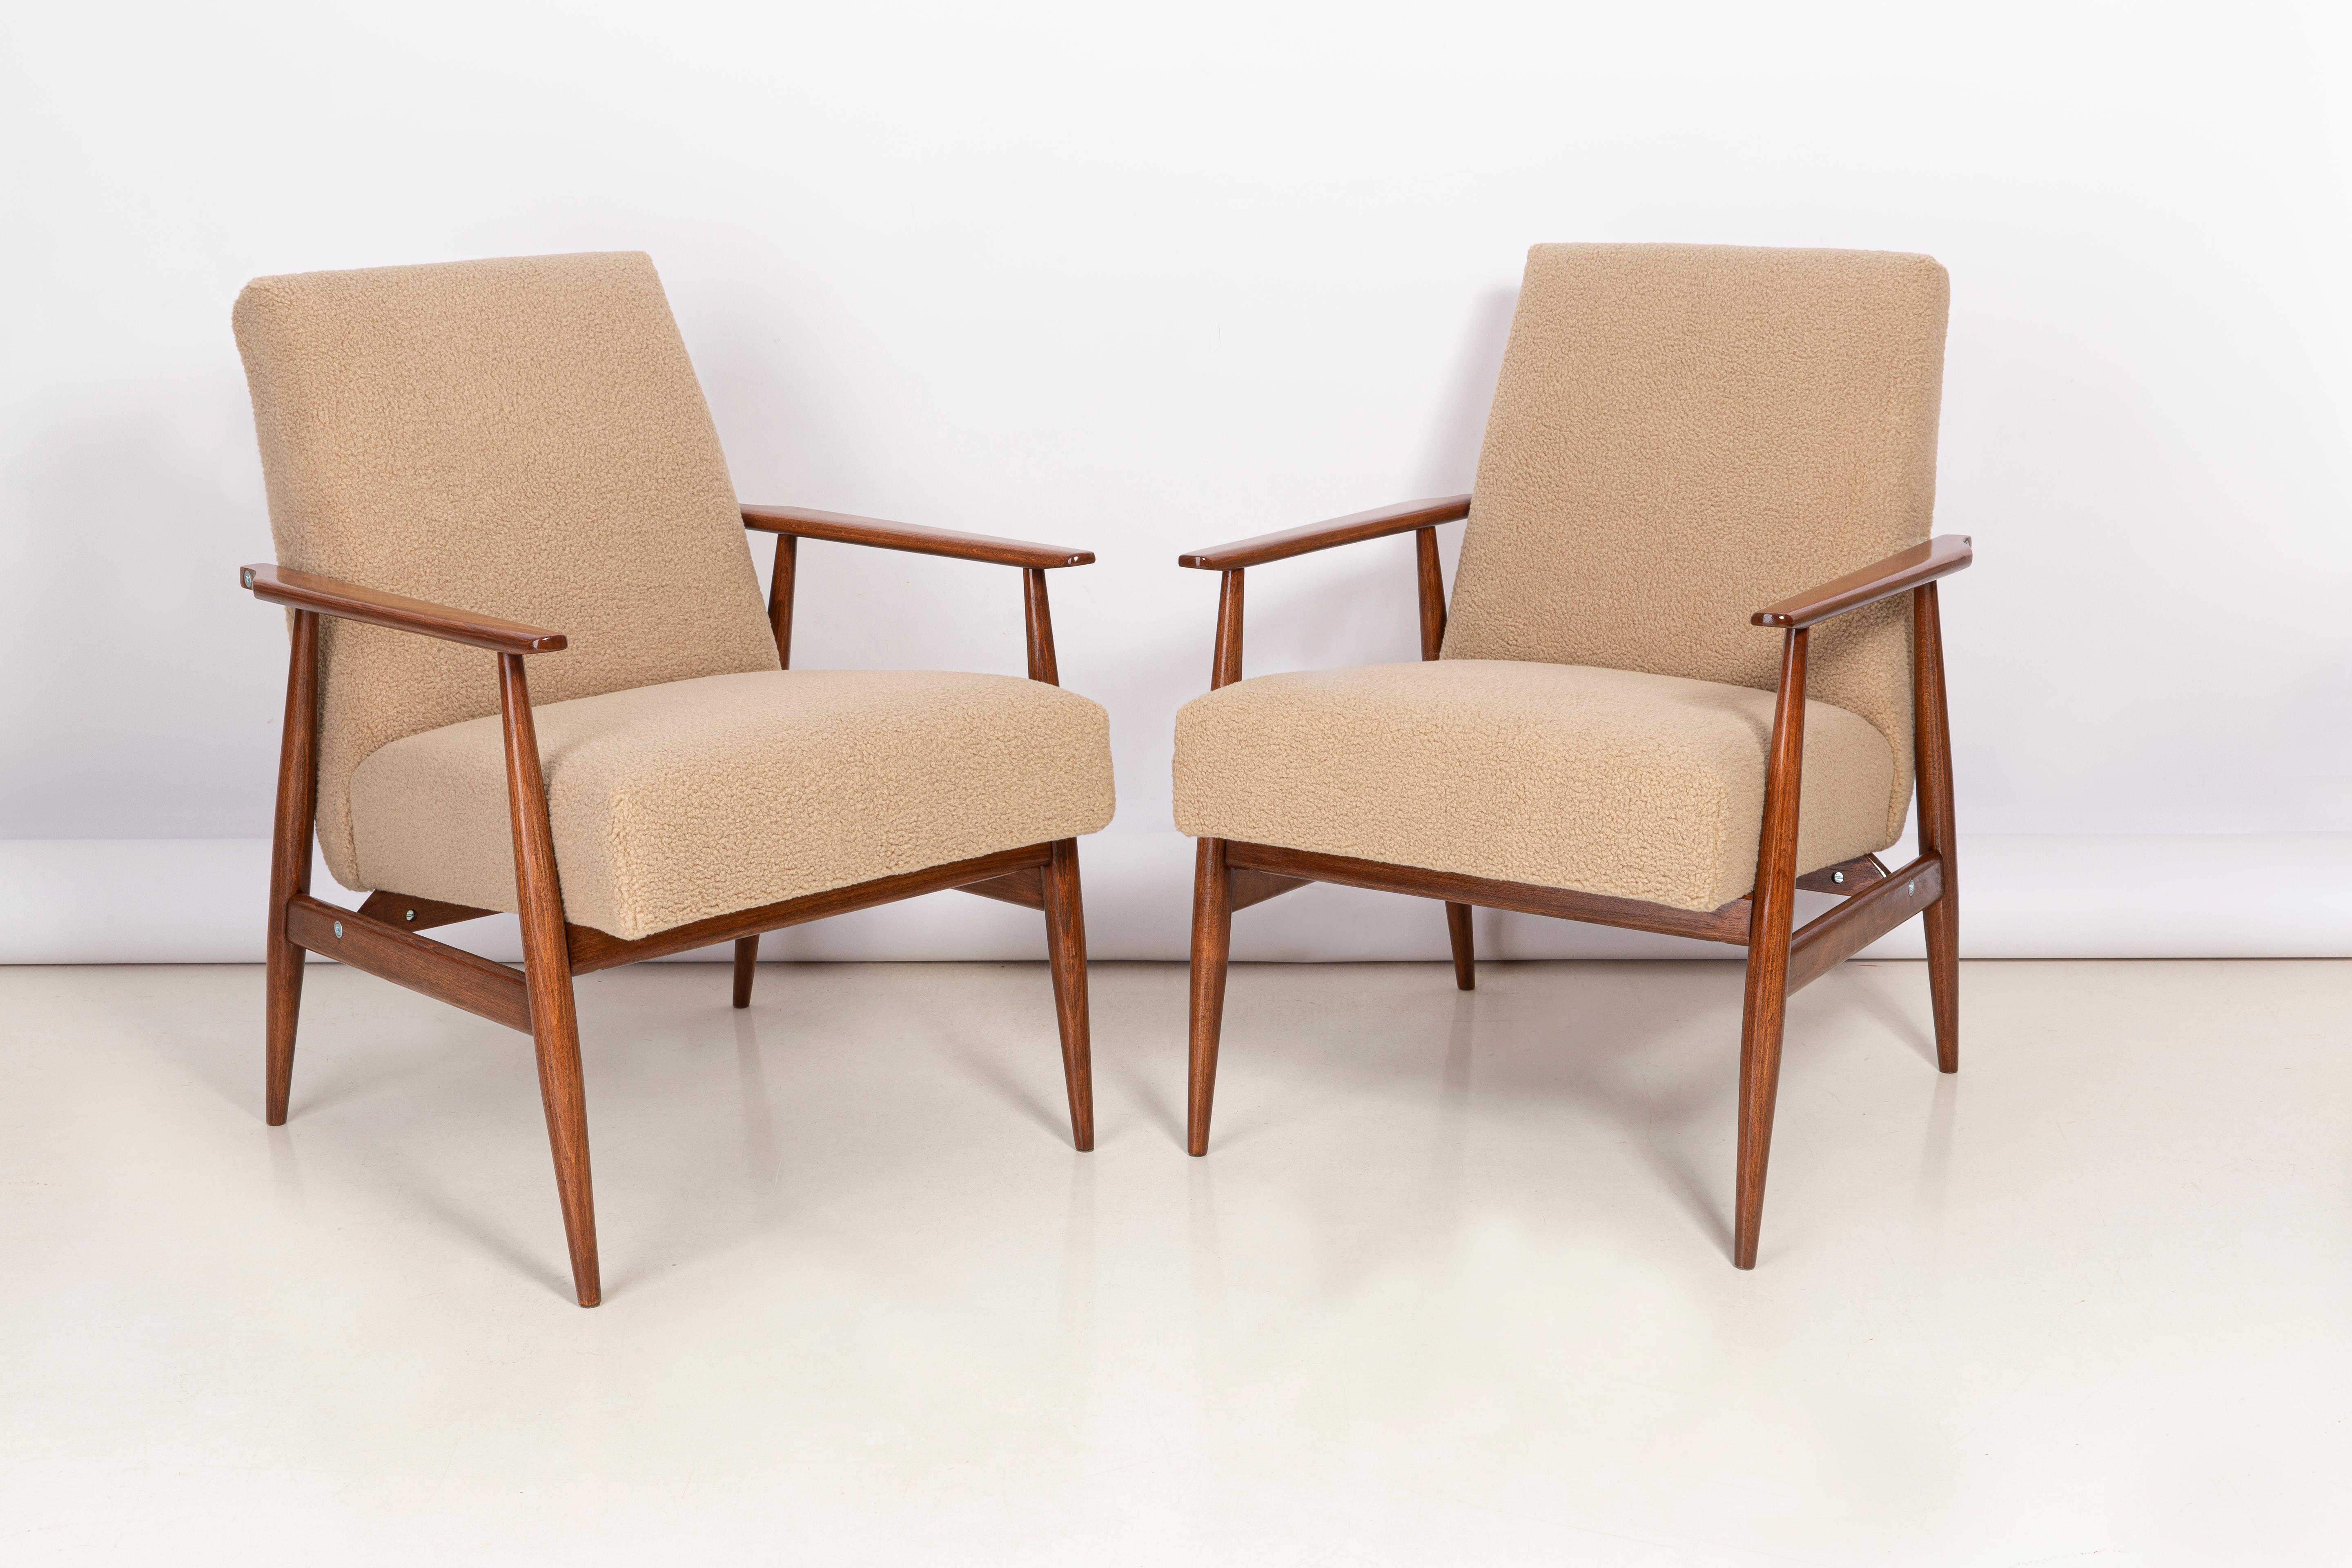 Une paire de fauteuils en bouclé de chameau, conçus par Henryk Lis. Meubles après une rénovation complète de la menuiserie et de la tapisserie. Les fauteuils seront parfaits dans les espaces minimalistes, tant privés que publics. 

Rembourrage -